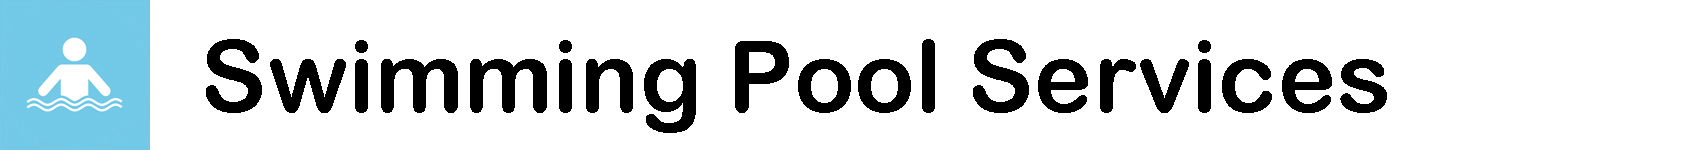 PoolHeader